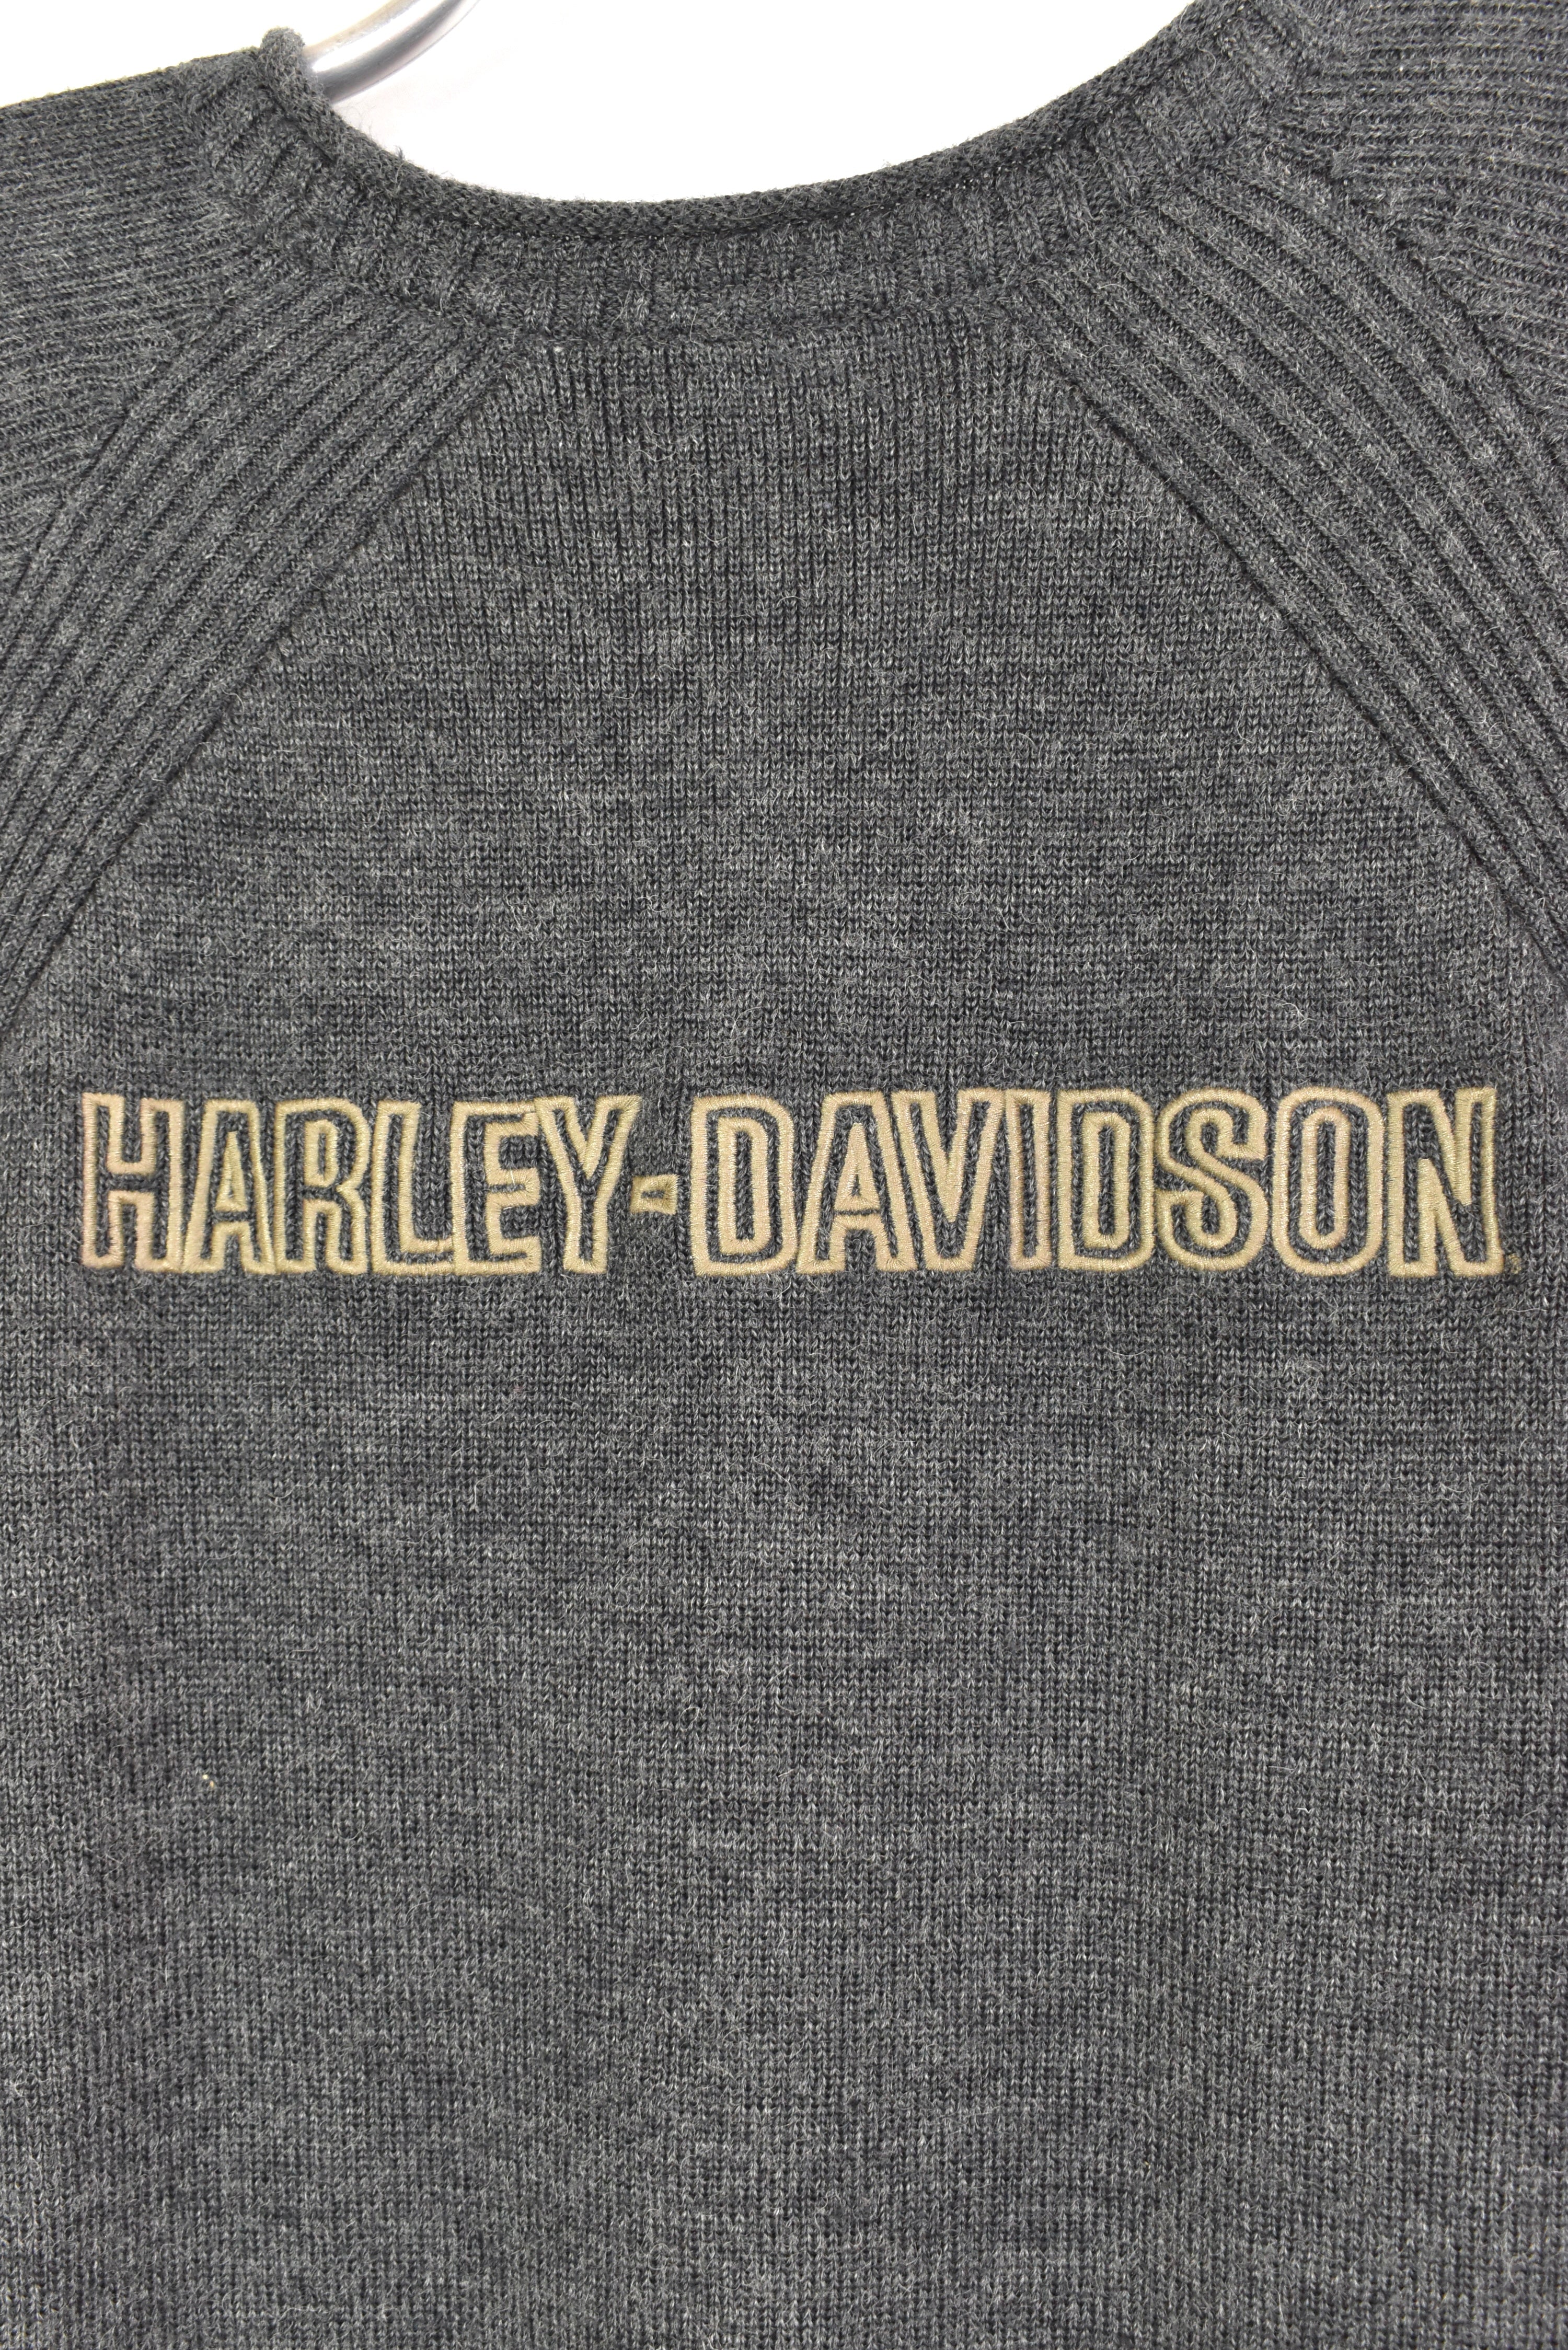 Vintage Harley Davidson embroidered knit grey sweatshirt | Large HARLEY DAVIDSON